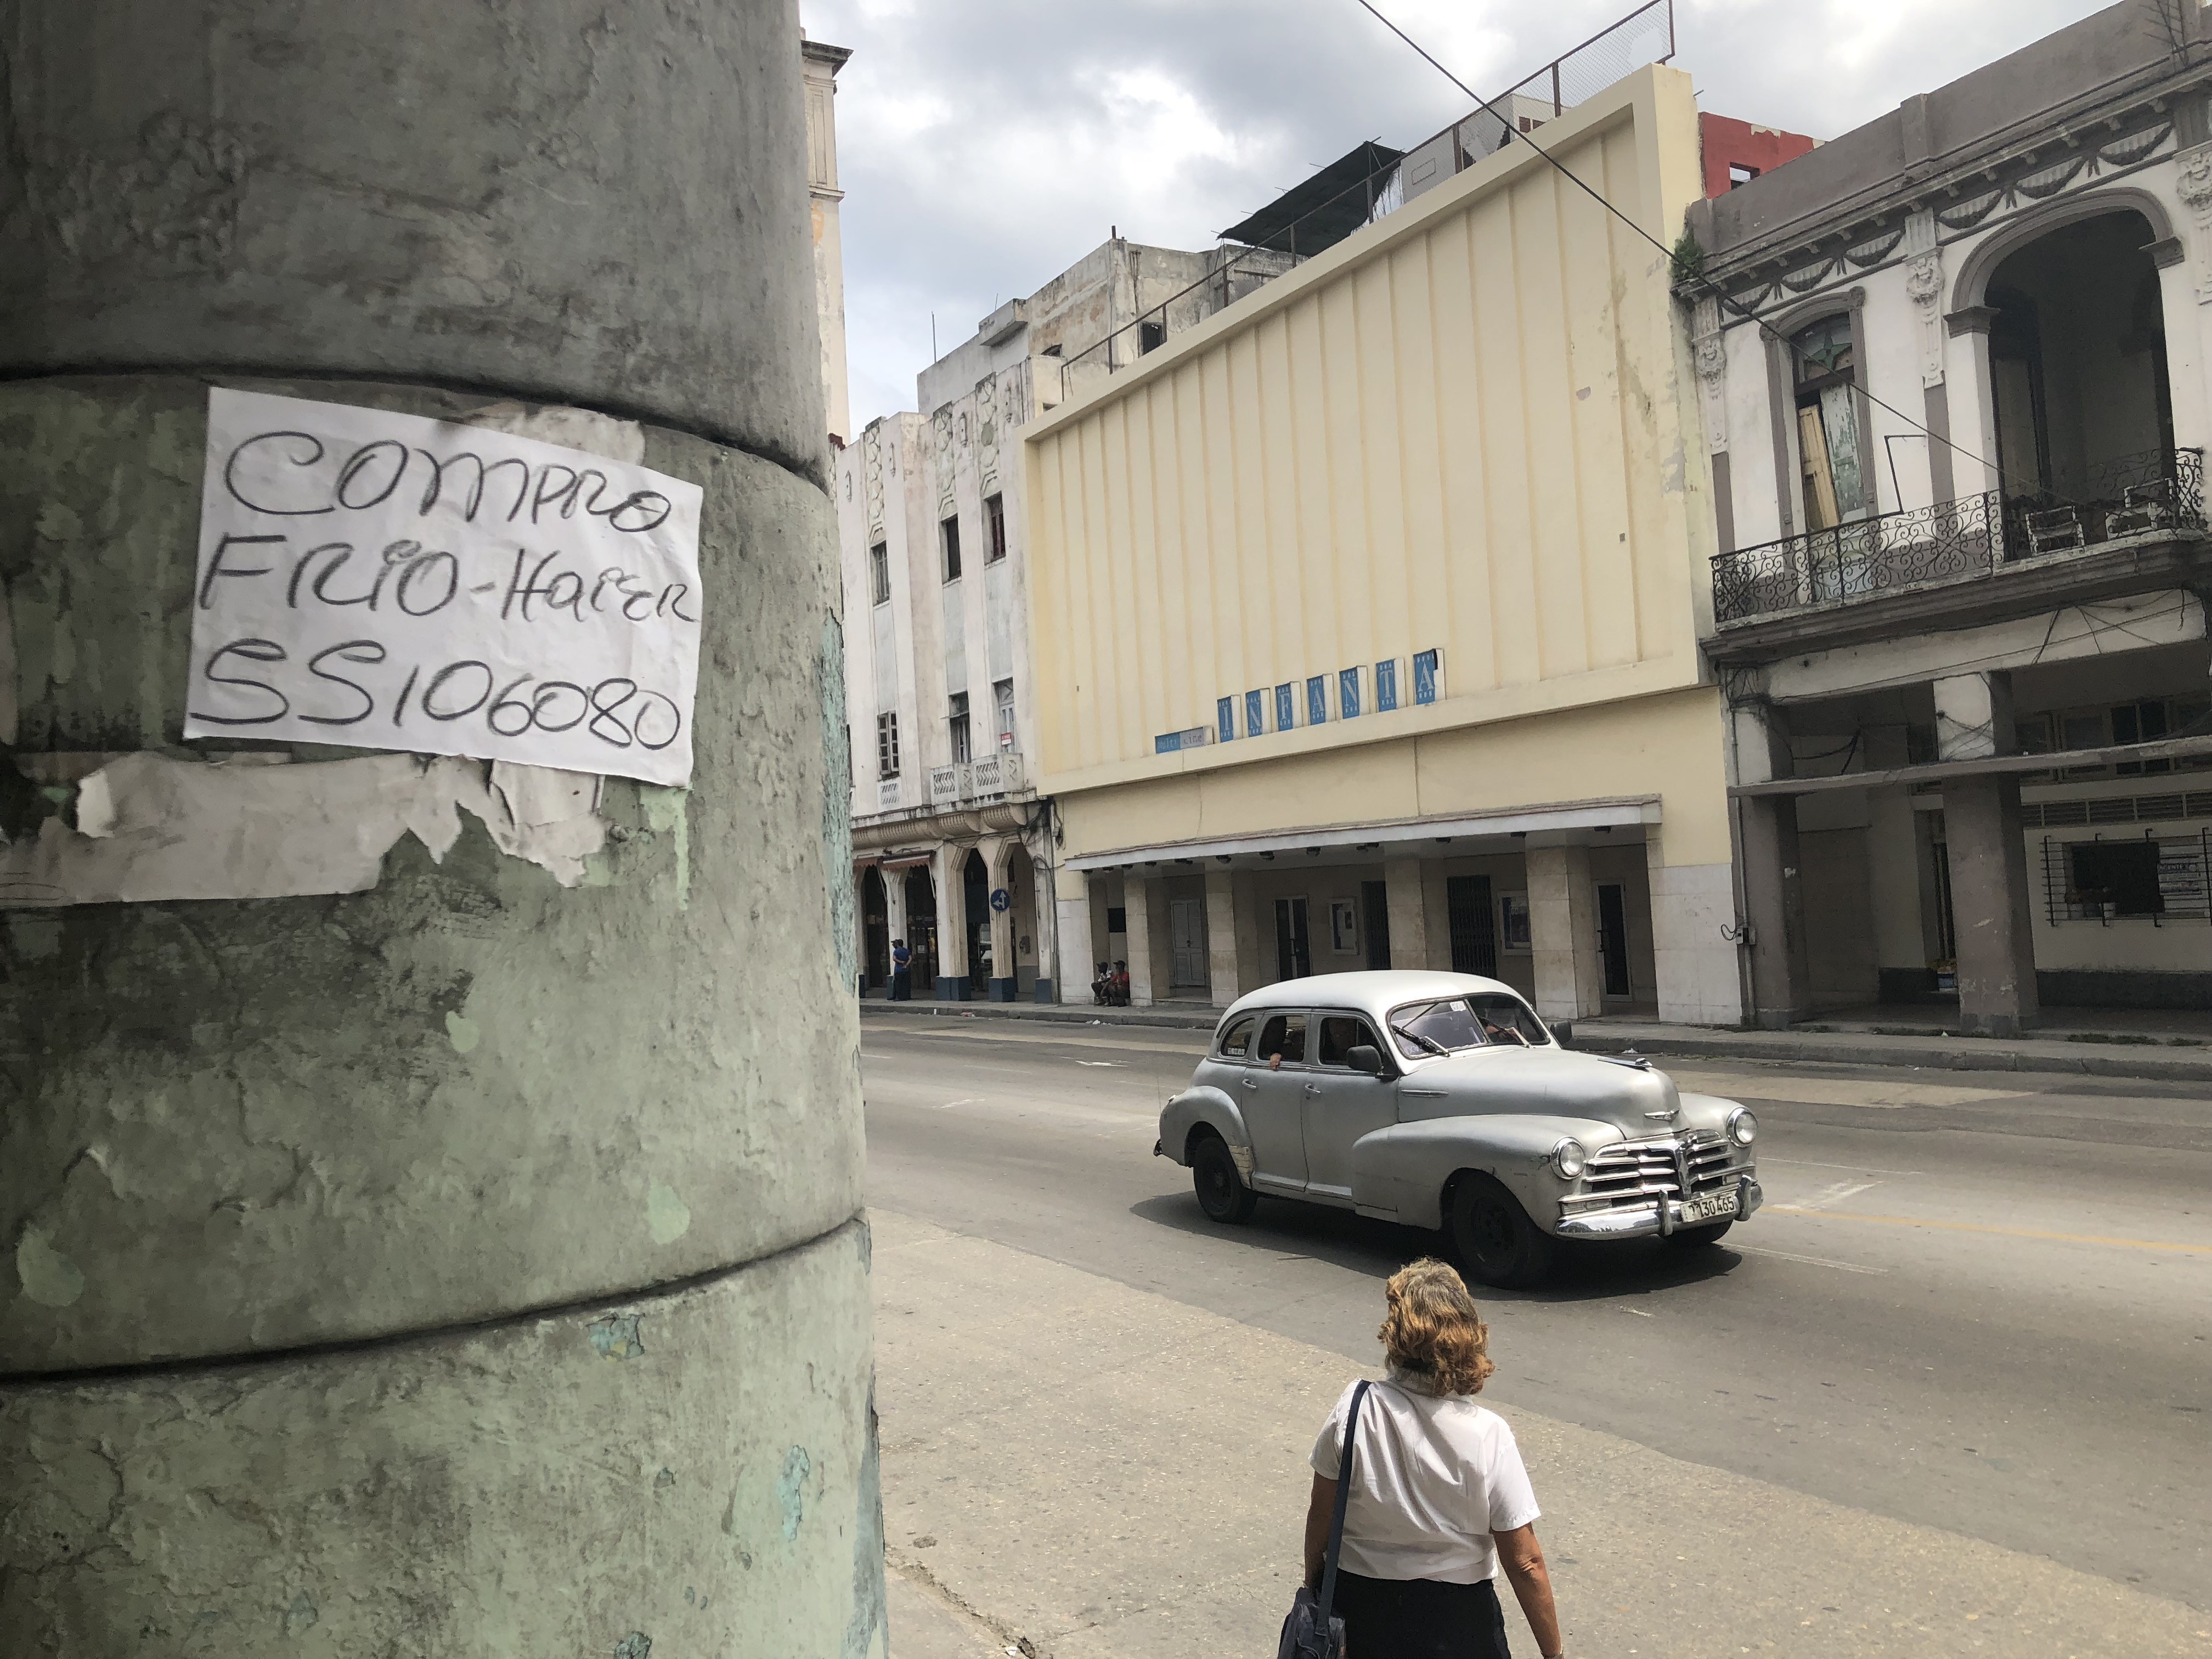 Punto muerto farmacia transferencia de dinero Anuncios clasificados en Cuba: El Prado, Revolico y las redes sociales